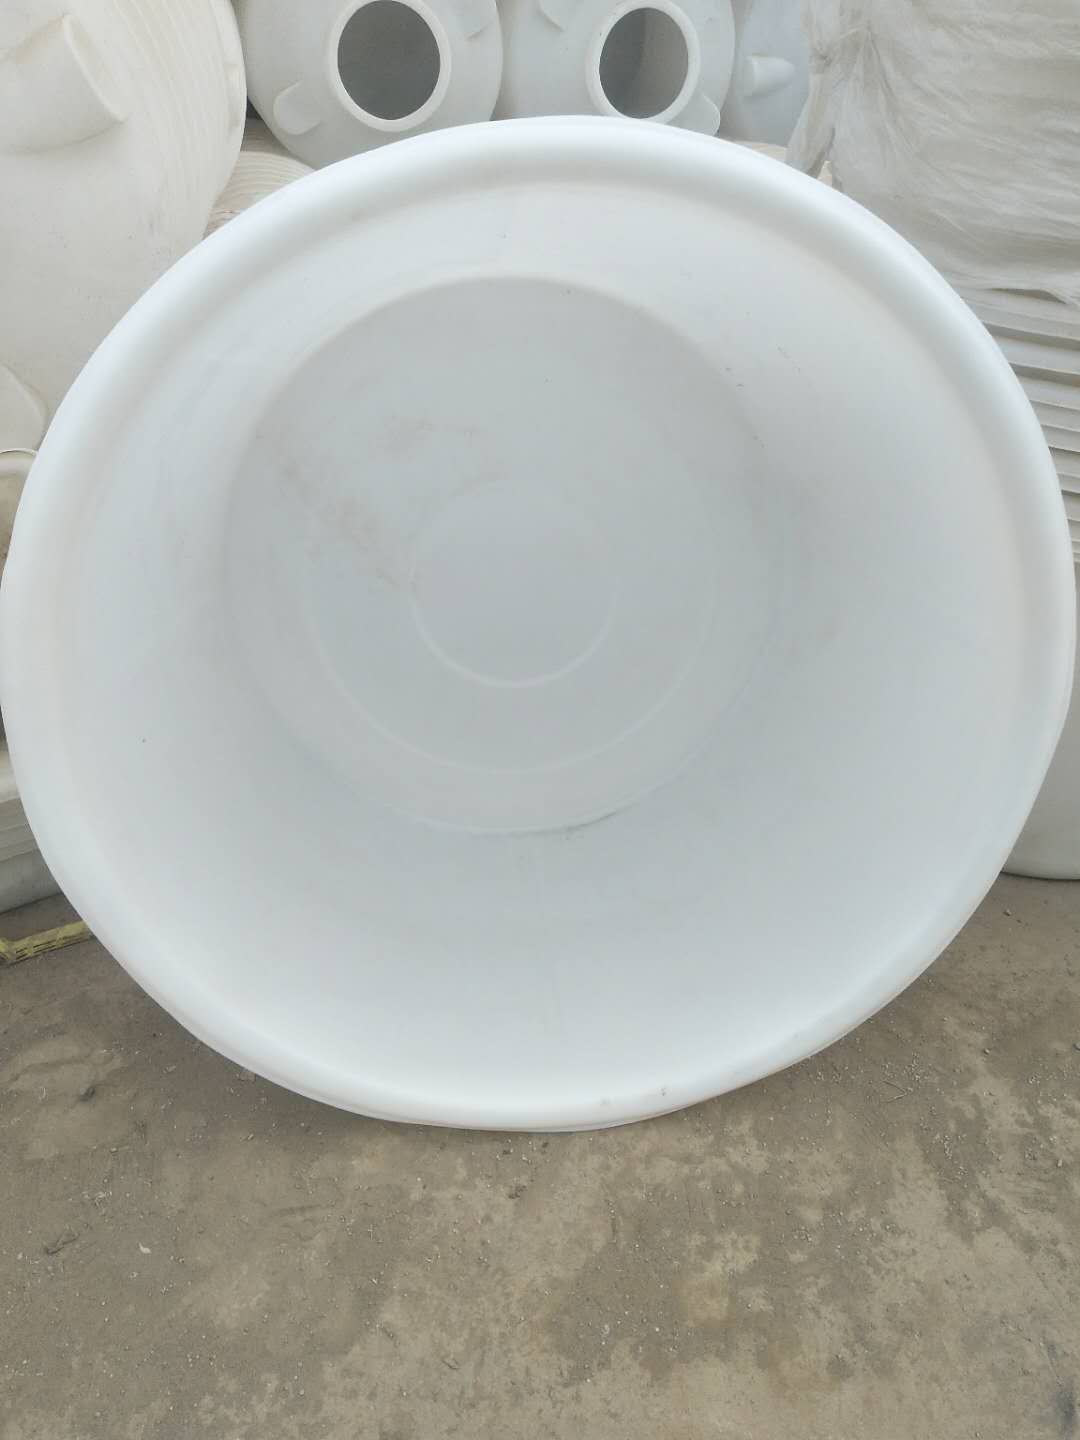 德州市塑料圆桶厂家供应山东富航4000升 发酵桶 泡菜桶价格优惠 发酵桶  泡菜桶 塑料桶 塑料圆桶